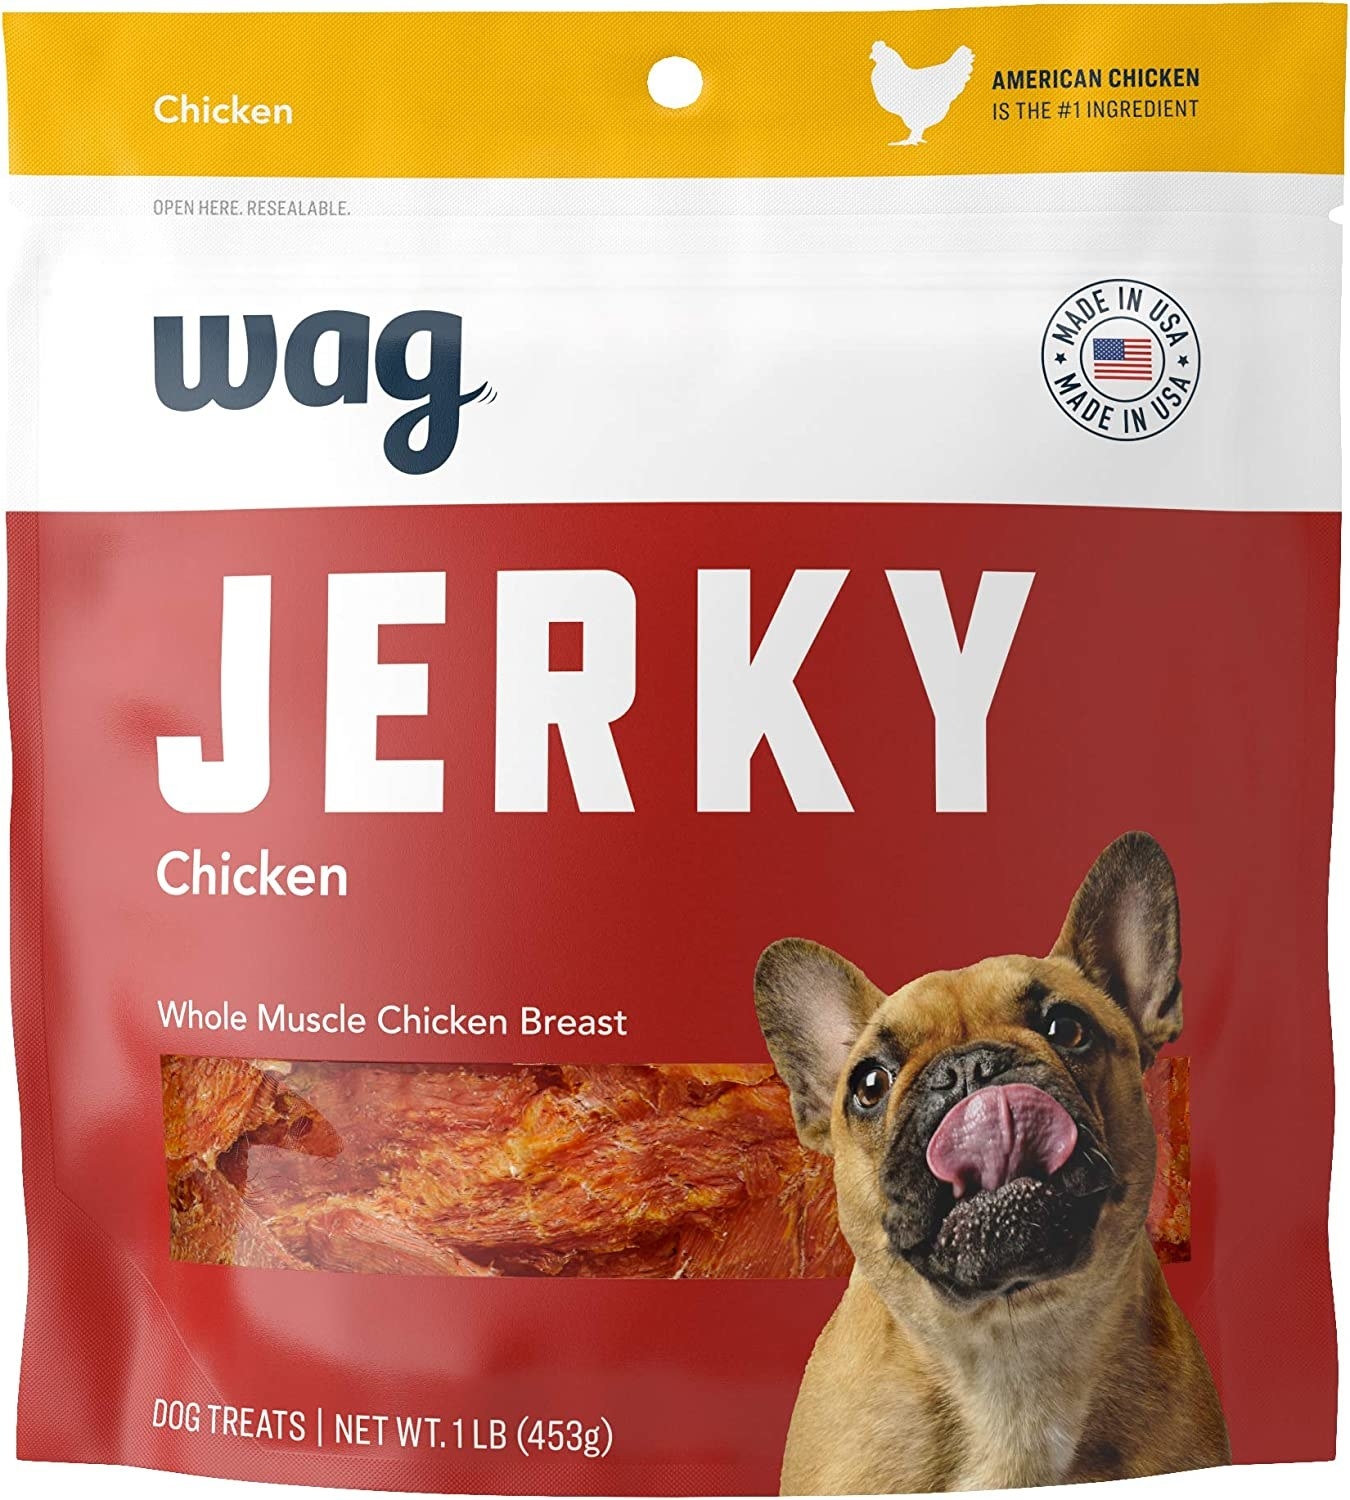 bag of chicken flavor jerky dog treats